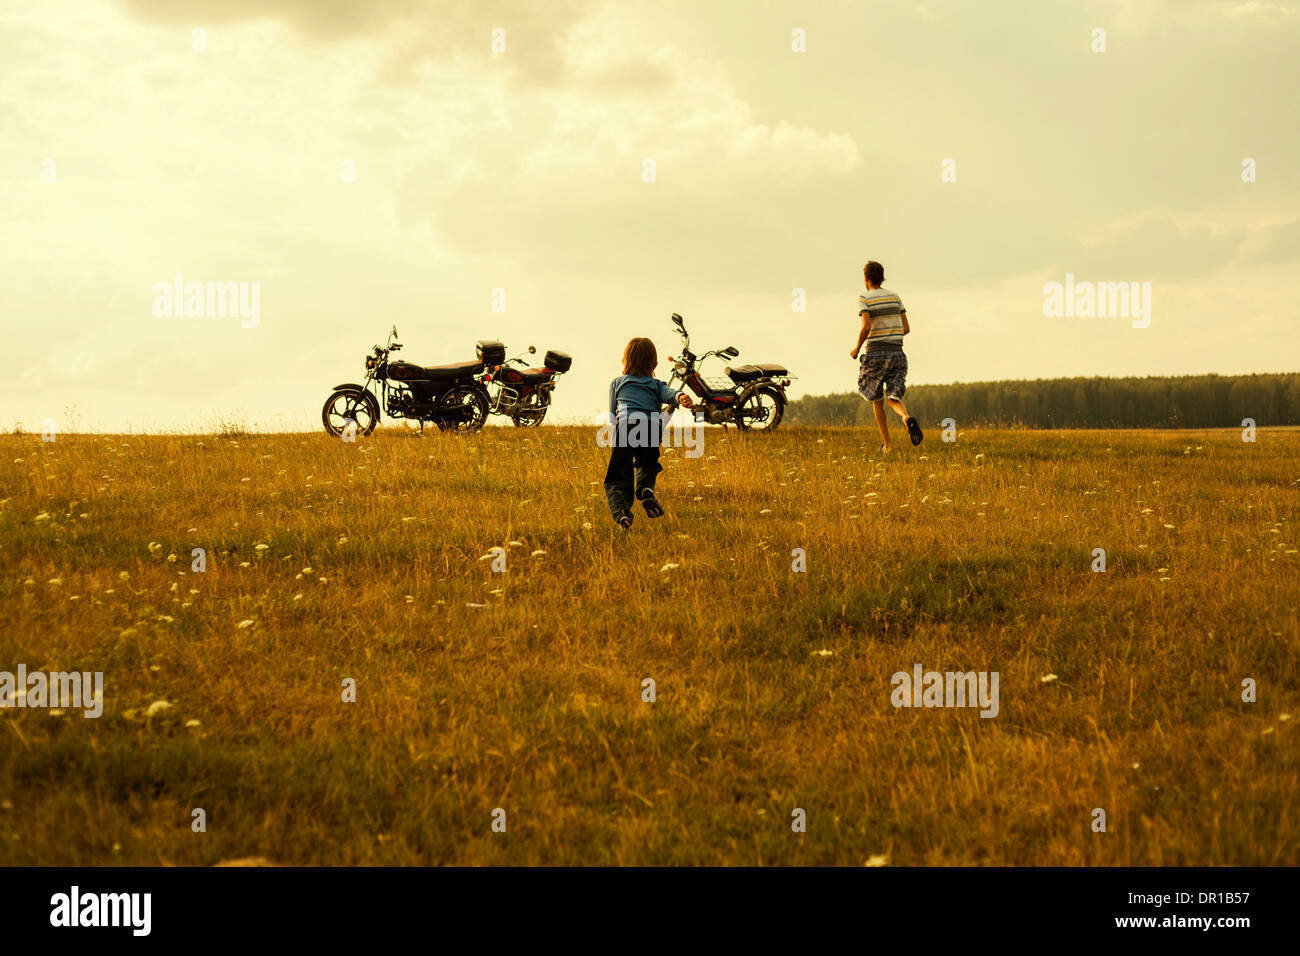 Ragazzi in esecuzione per i motocicli nel paesaggio rurale Foto Stock